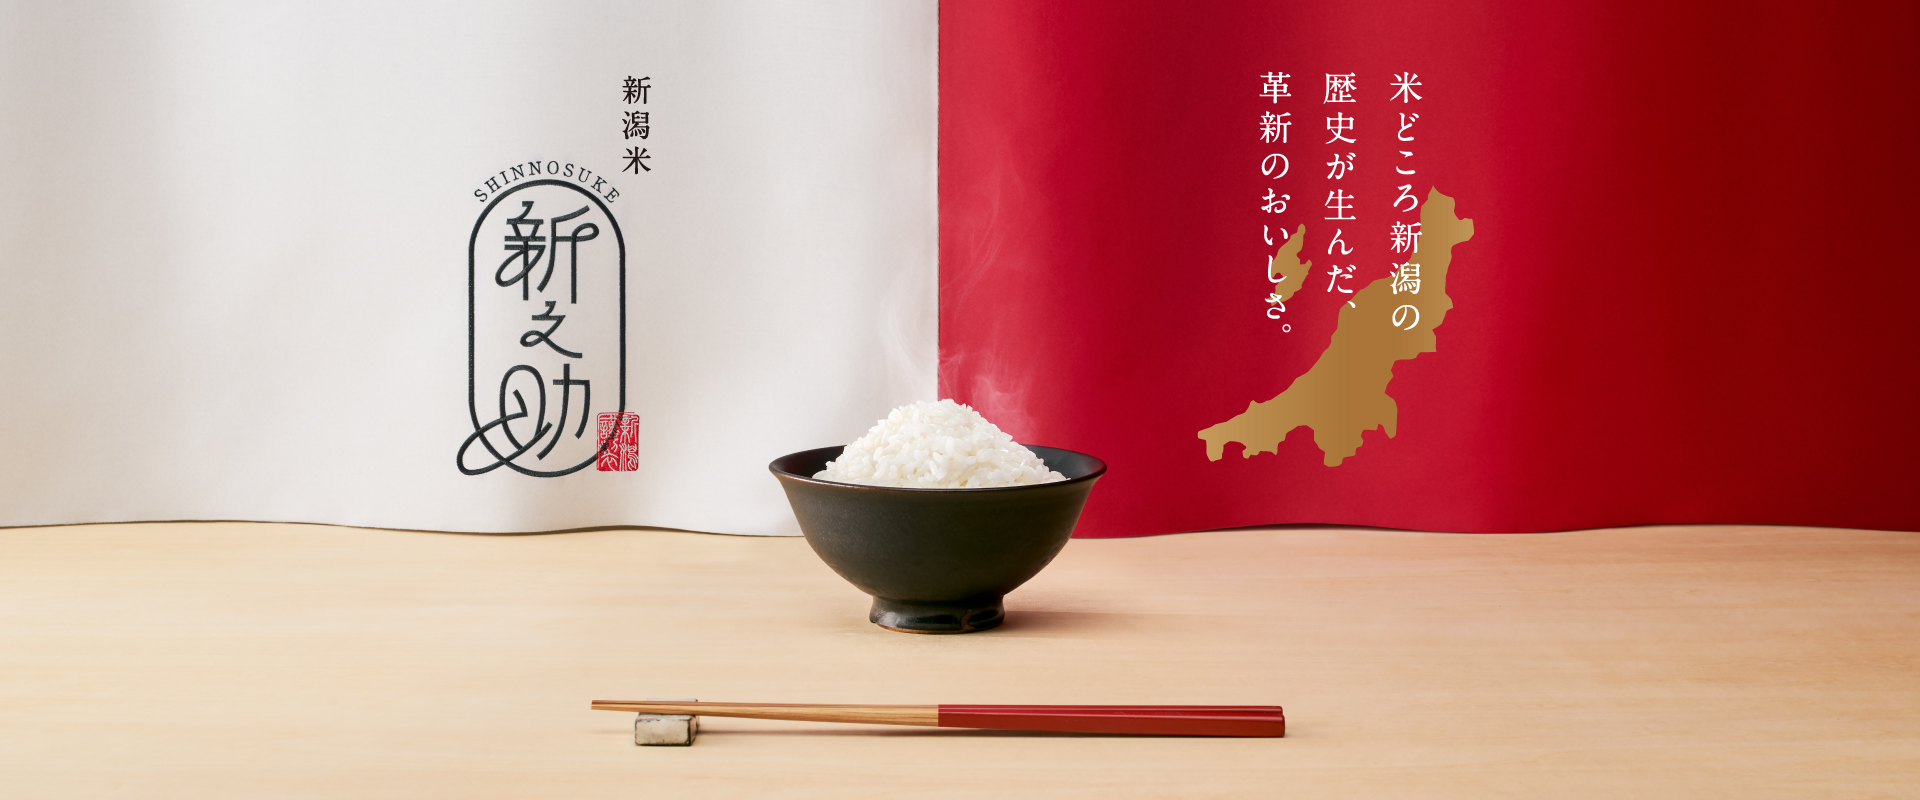 米づくりの伝統を極めた革新の品と質。